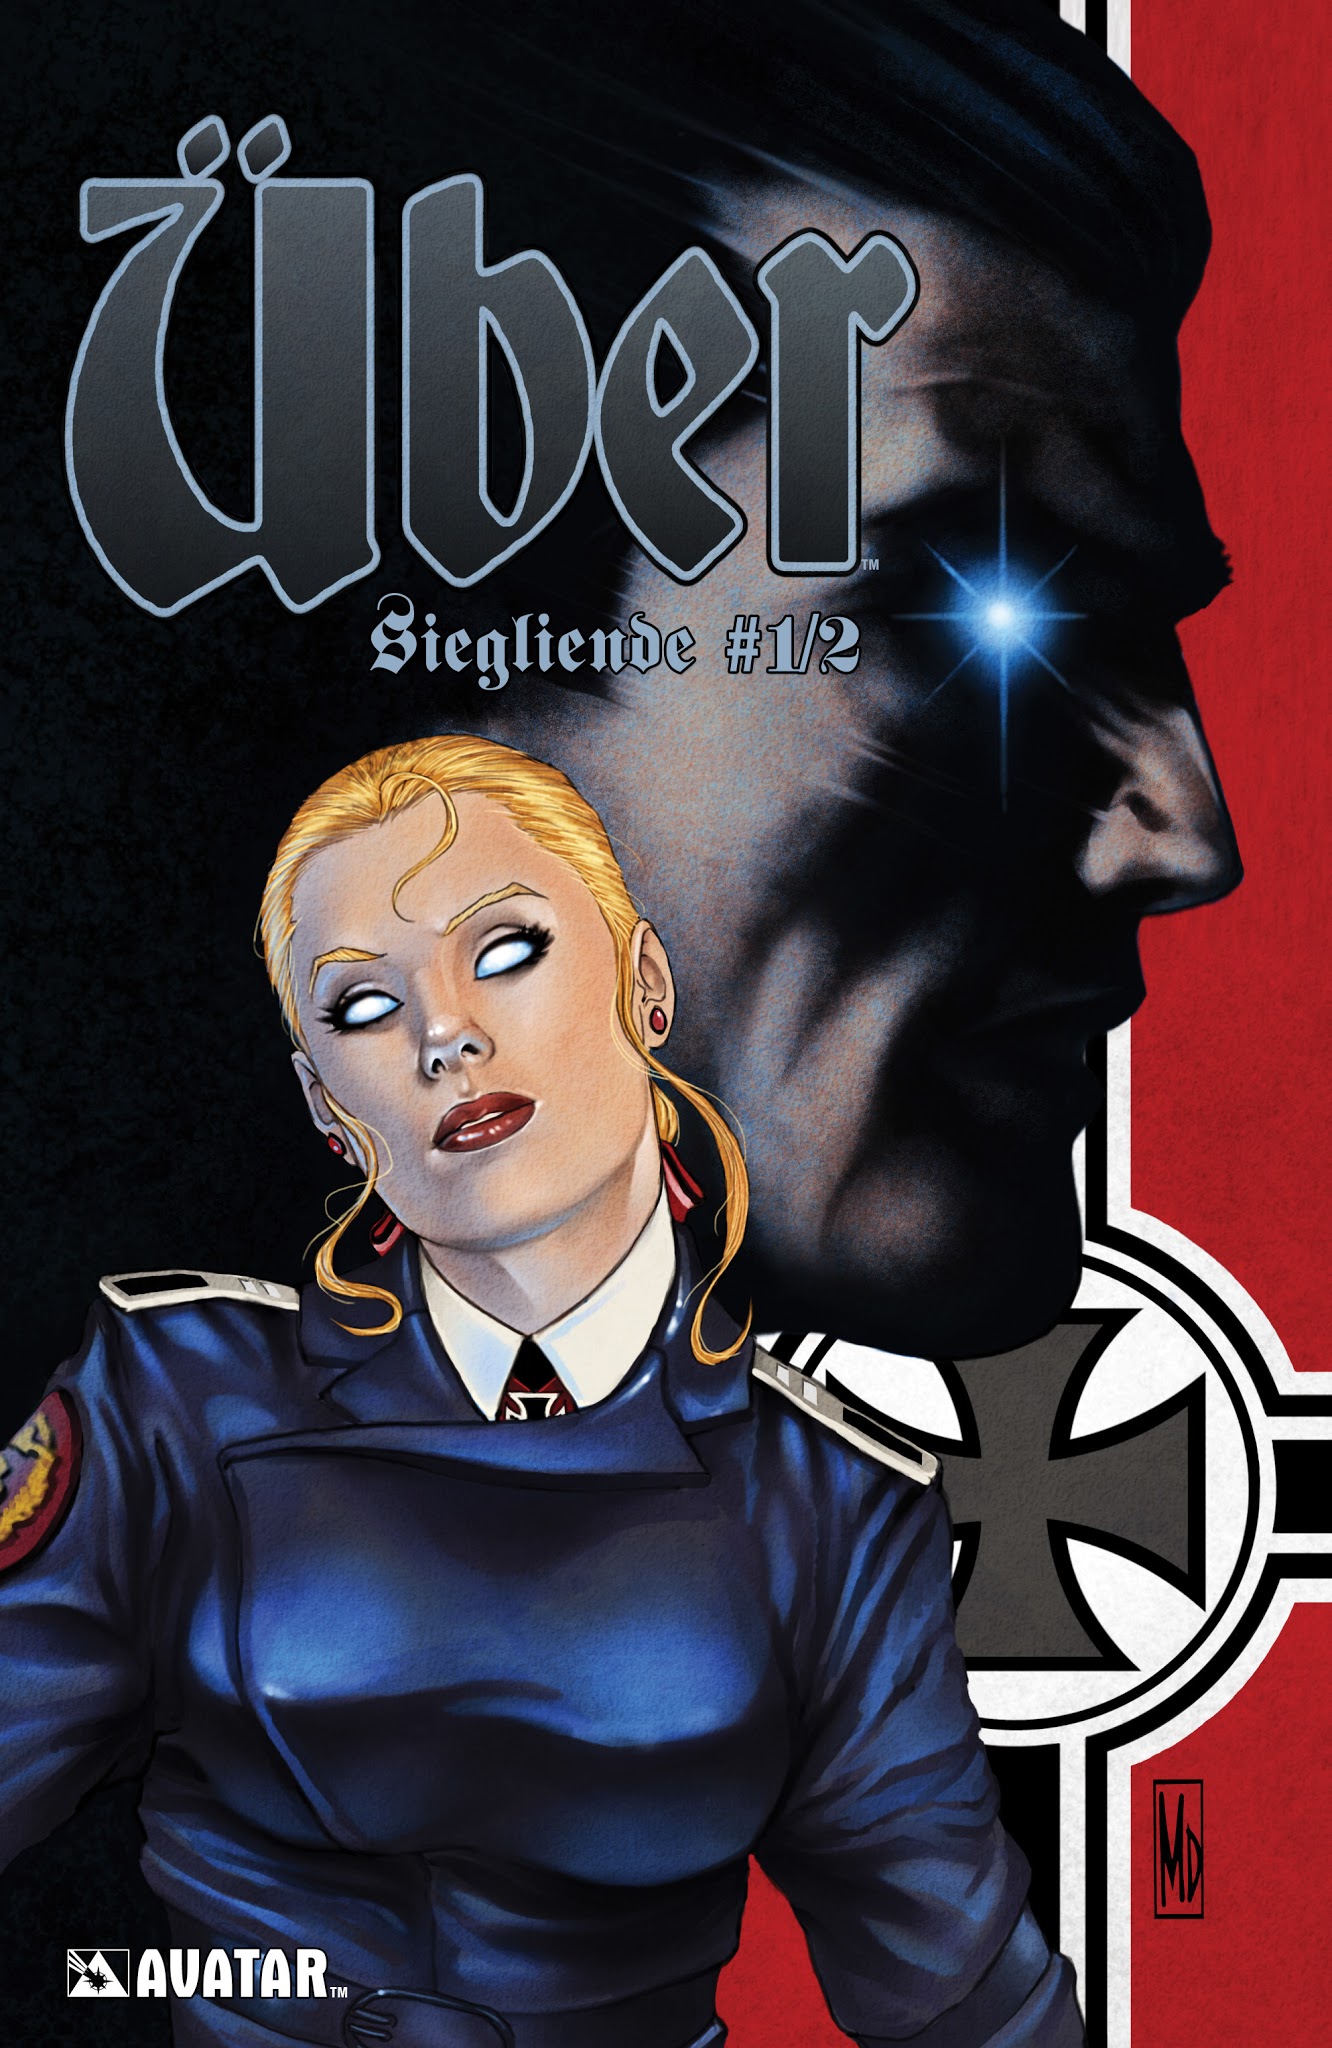 Read online Über: Siegliende comic -  Issue # Full - 1